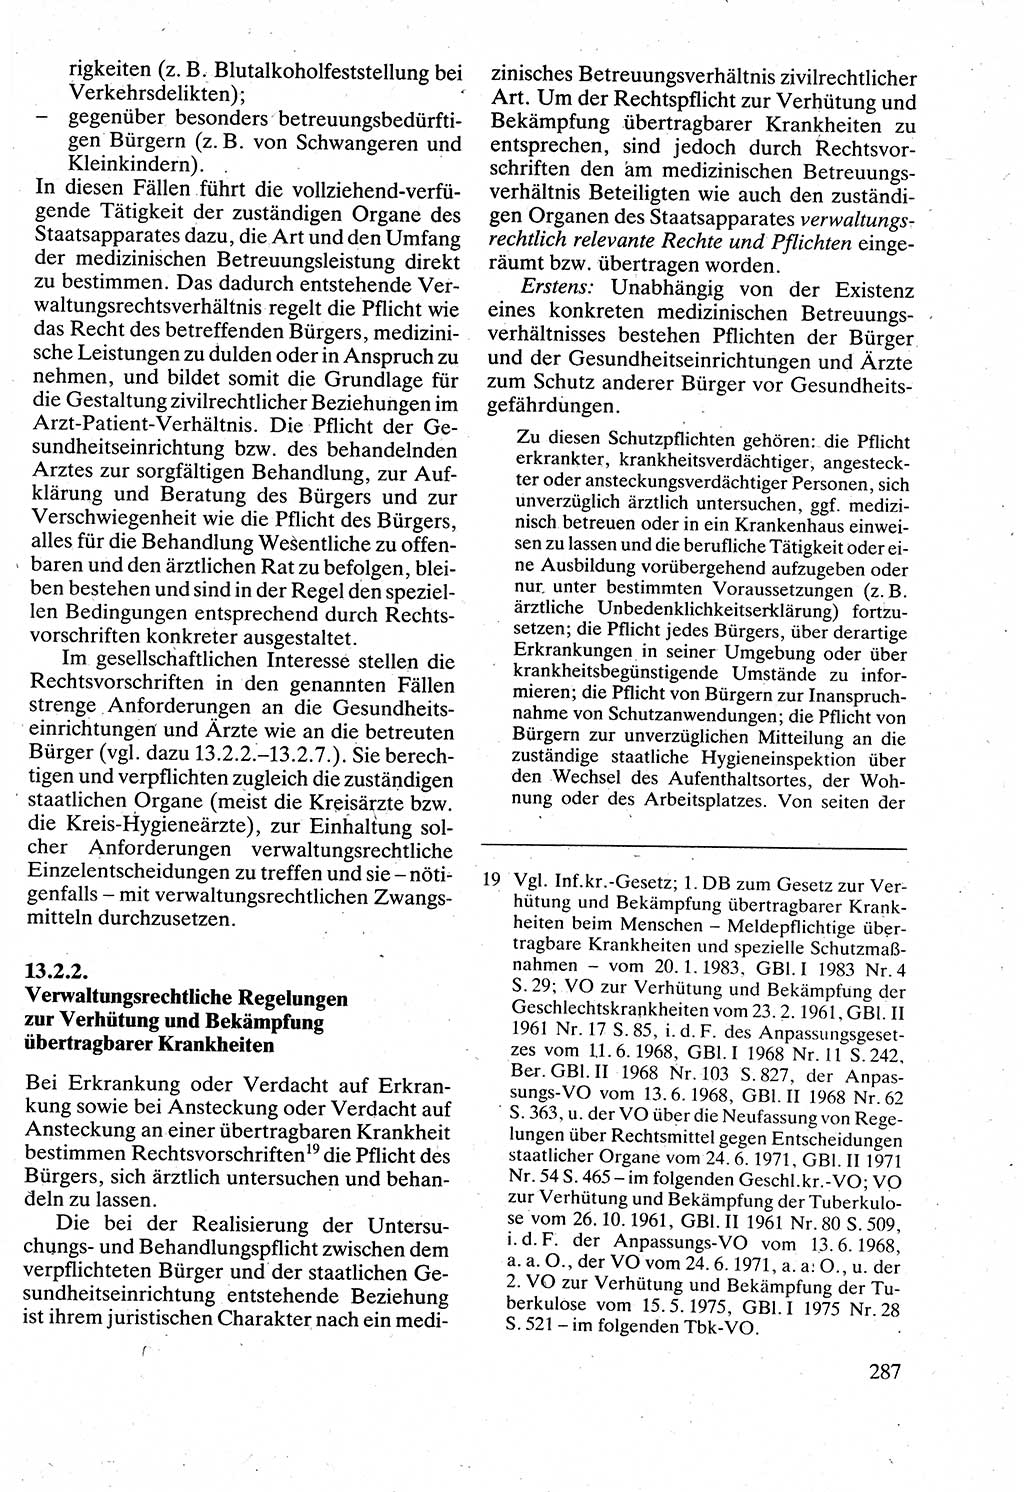 Verwaltungsrecht [Deutsche Demokratische Republik (DDR)], Lehrbuch 1988, Seite 287 (Verw.-R. DDR Lb. 1988, S. 287)